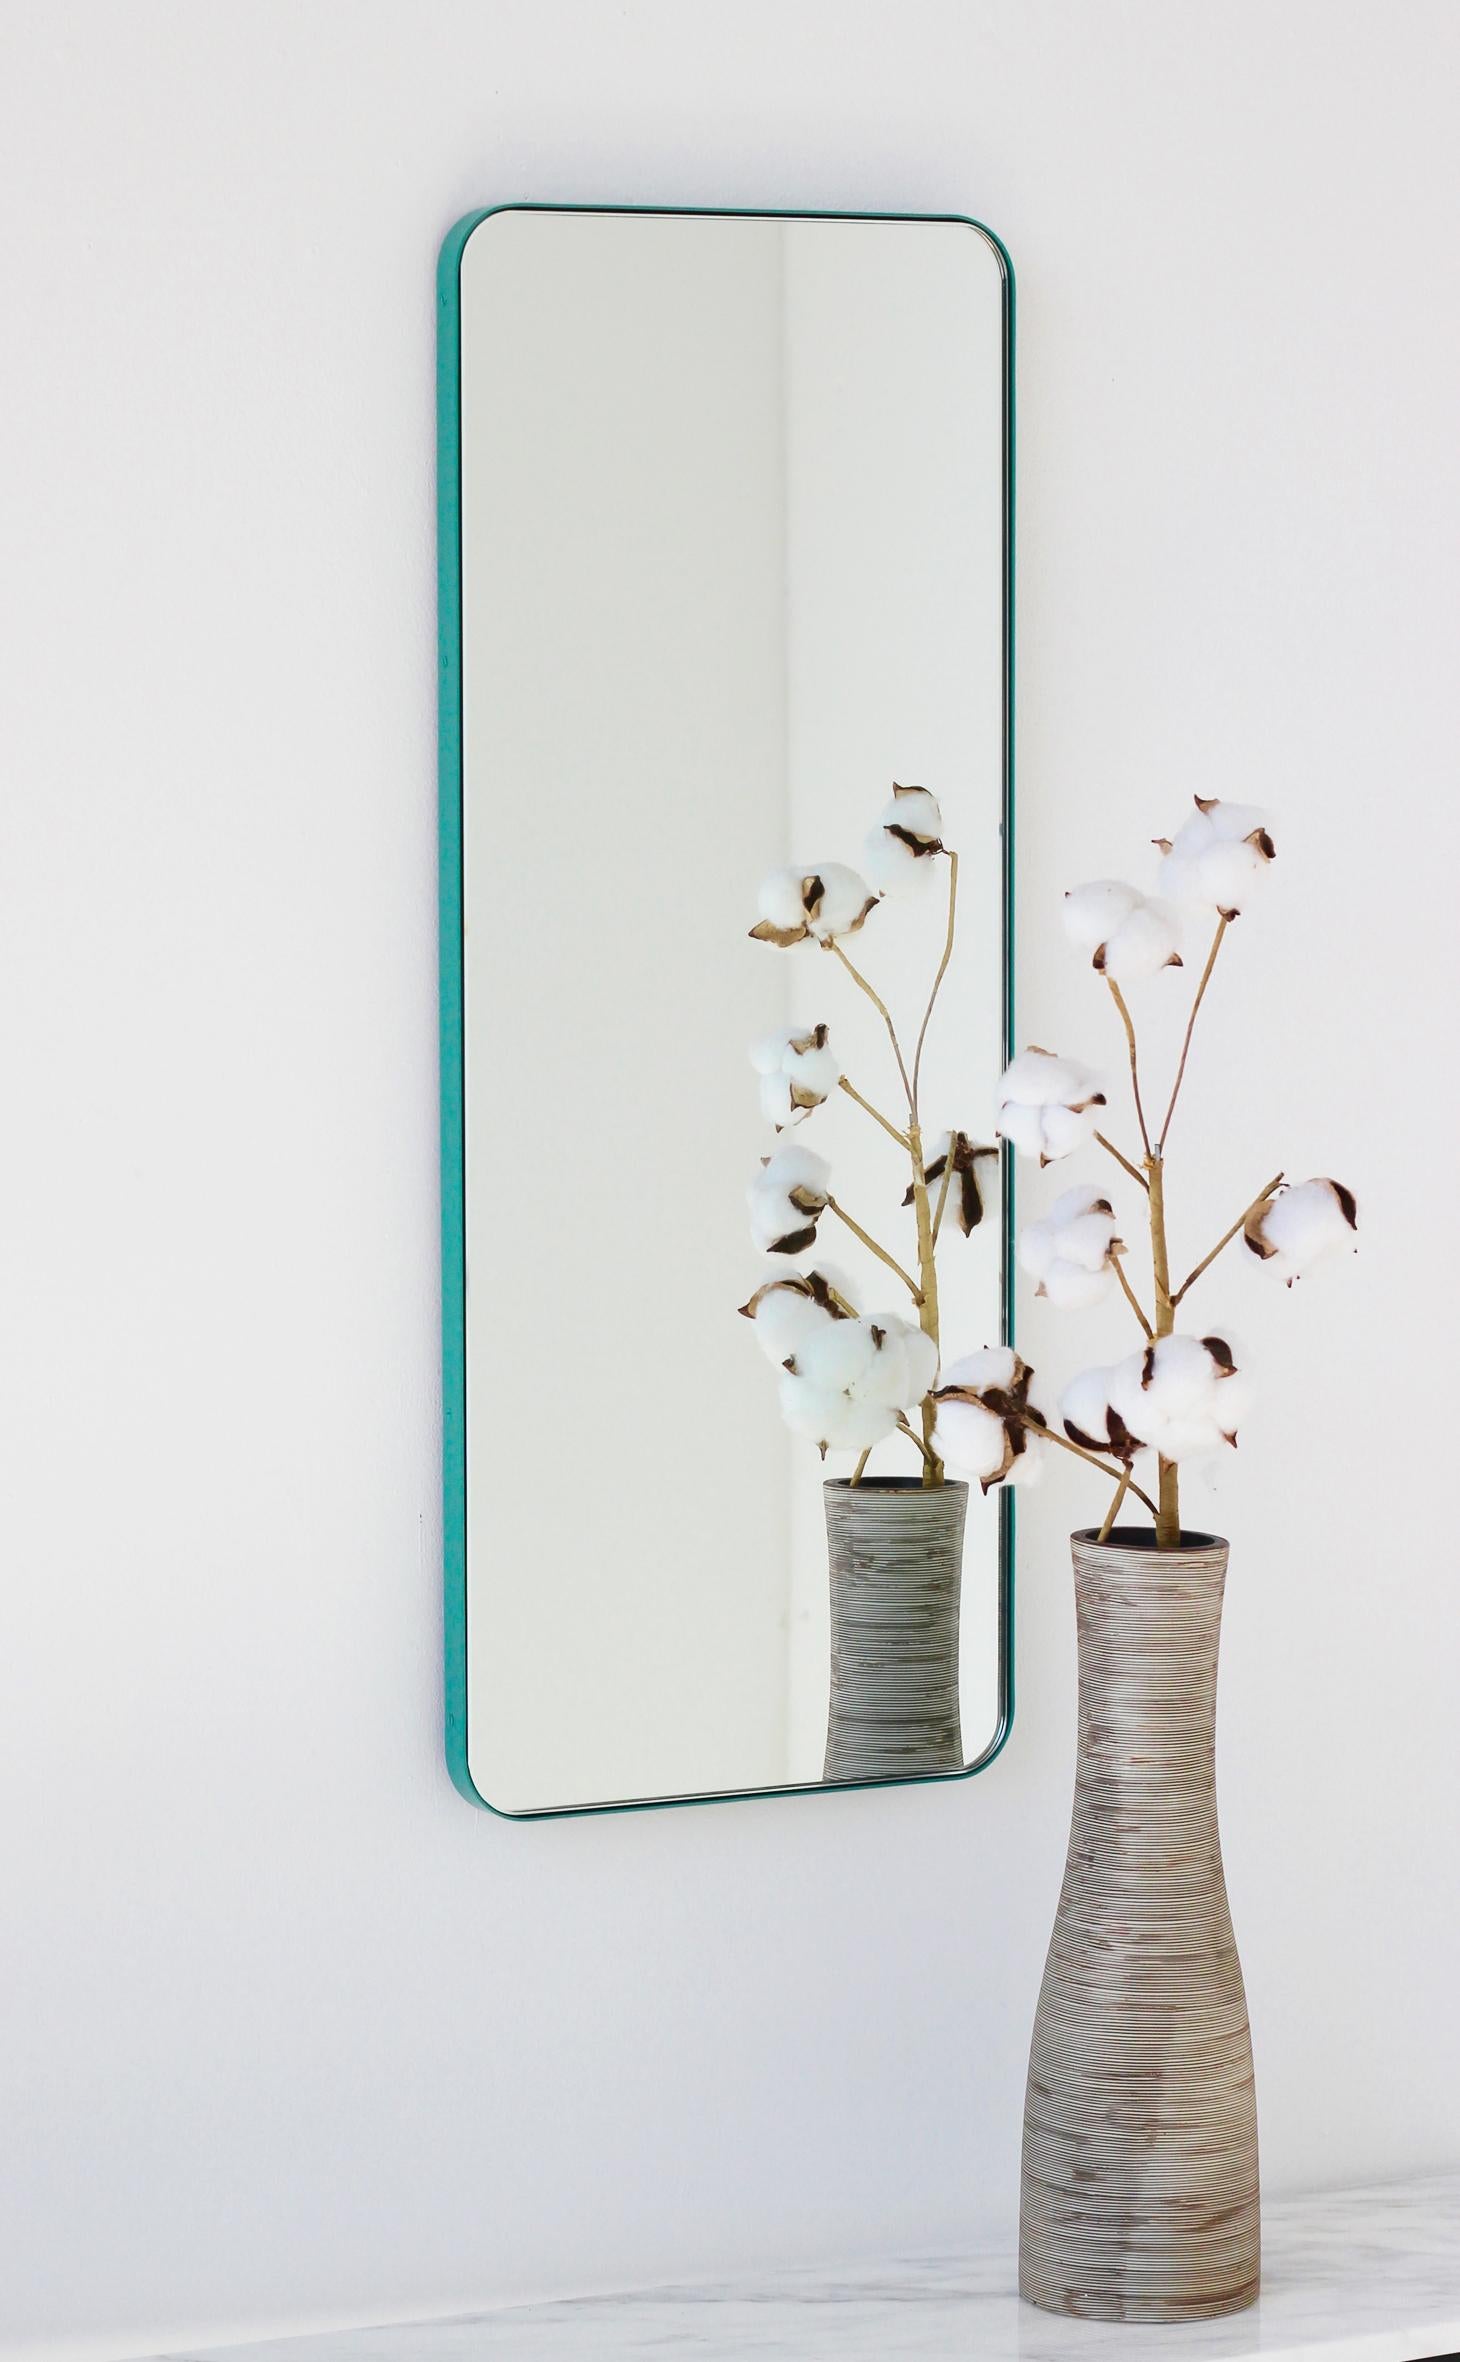 Miroir rectangulaire moderne avec un cadre turquoise menthe en aluminium peint par poudrage. Une partie de la charmante collection Quadris, conçue et fabriquée à la main à Londres, au Royaume-Uni. 

Fourni avec une barre en z spécialisée pour une